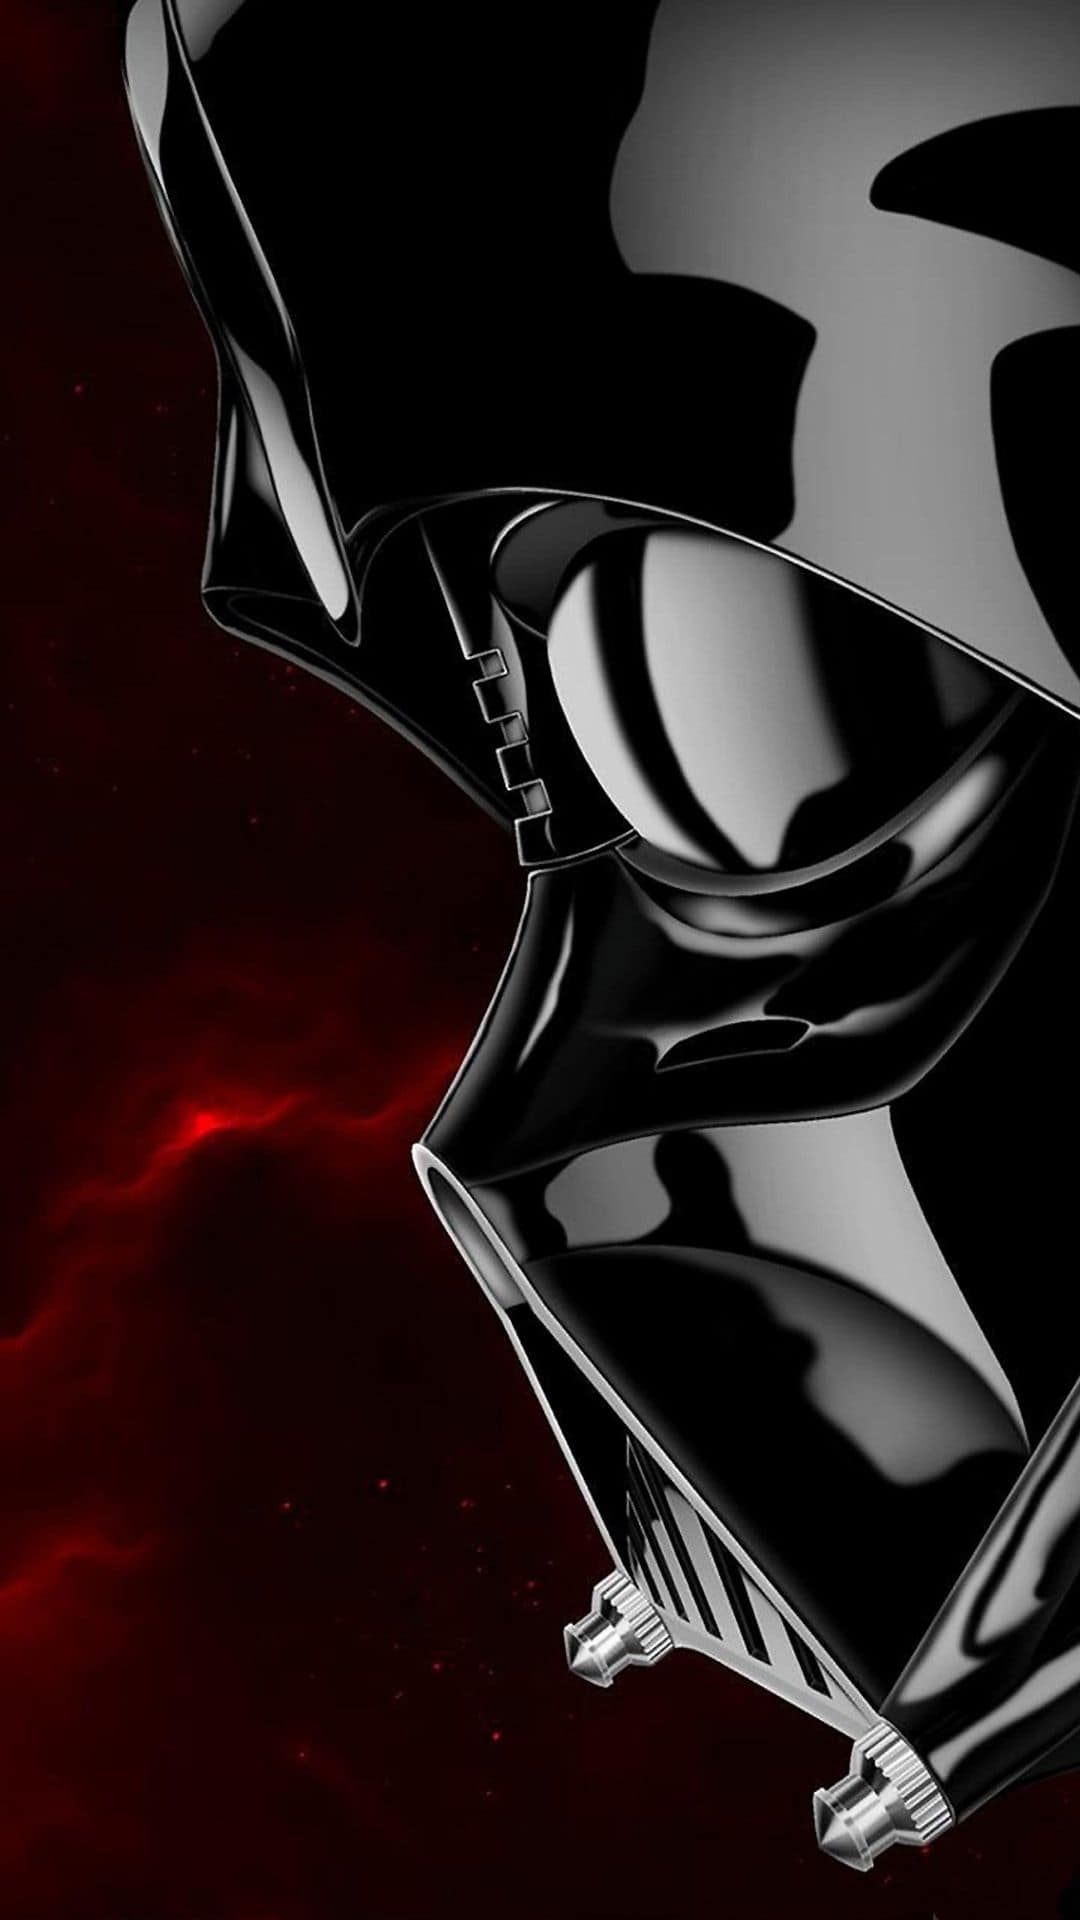 Fondo de pantalla de Darth Vader